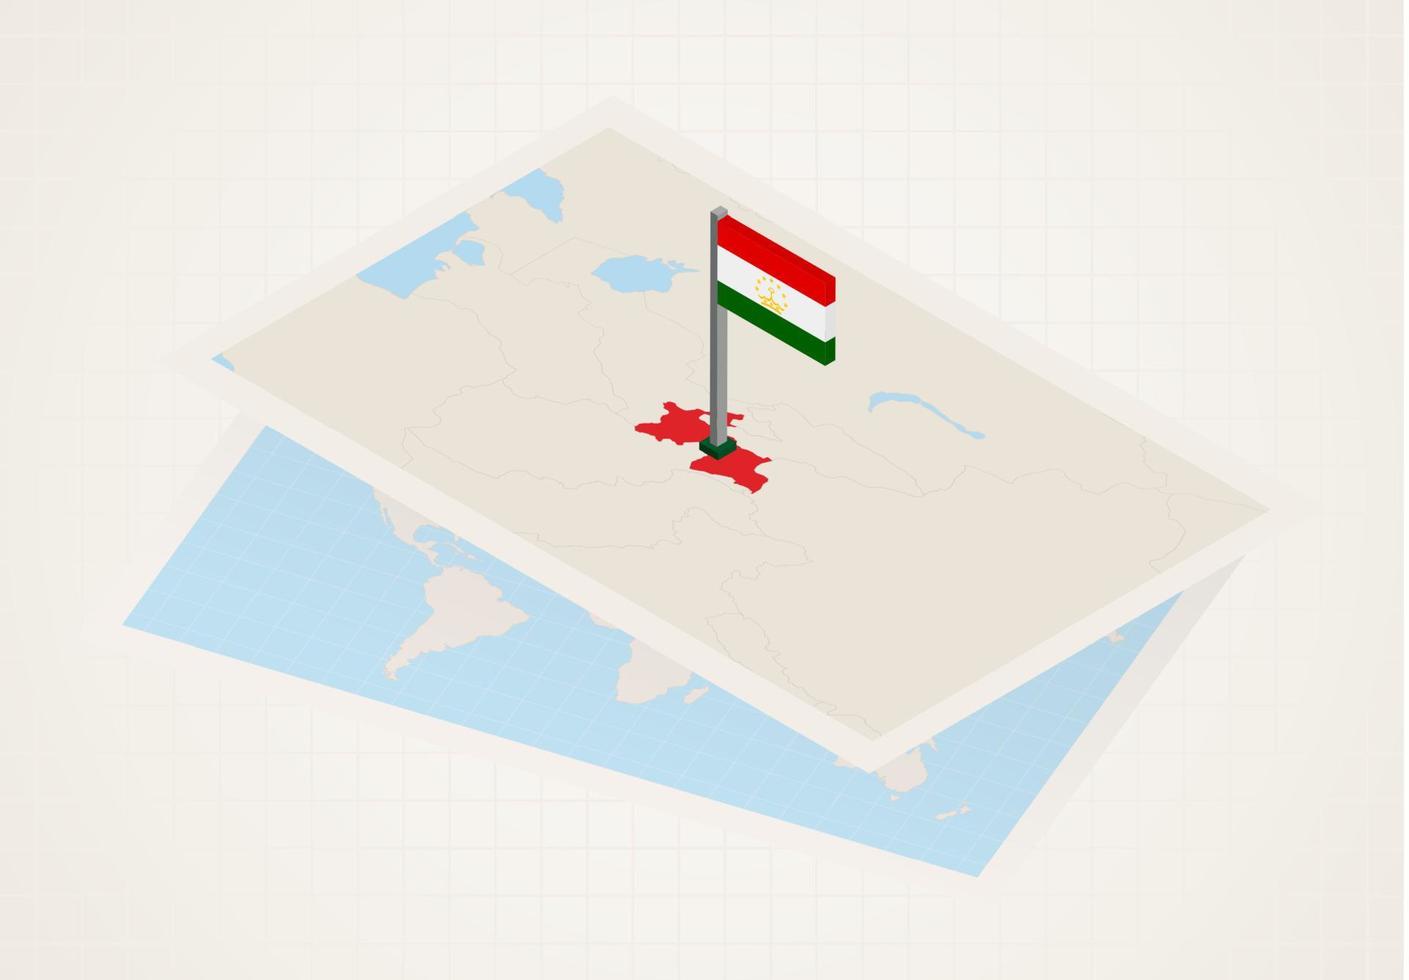 tajiquistão selecionado no mapa com bandeira isométrica do tajiquistão. vetor